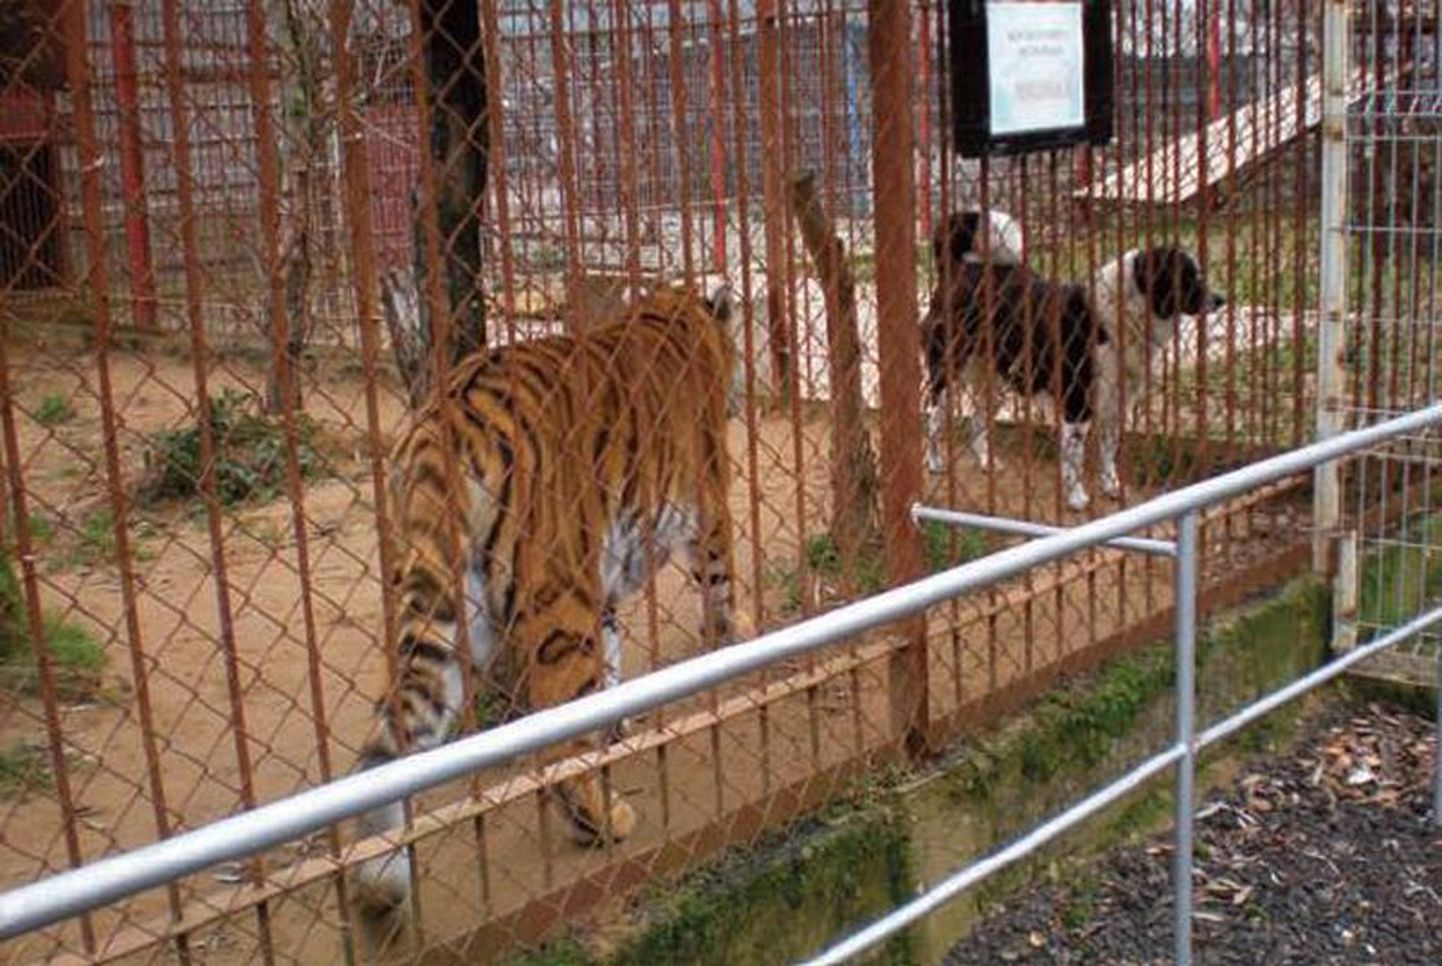 Puurinaabrid tiiger ja koer Klaipėda lähedal miniloomaaias. Raporti sõnul paistsid mõlemad loomad olukorraga harjunud olevat, kuid selle haridusväärtus külastajatele on küsitav.